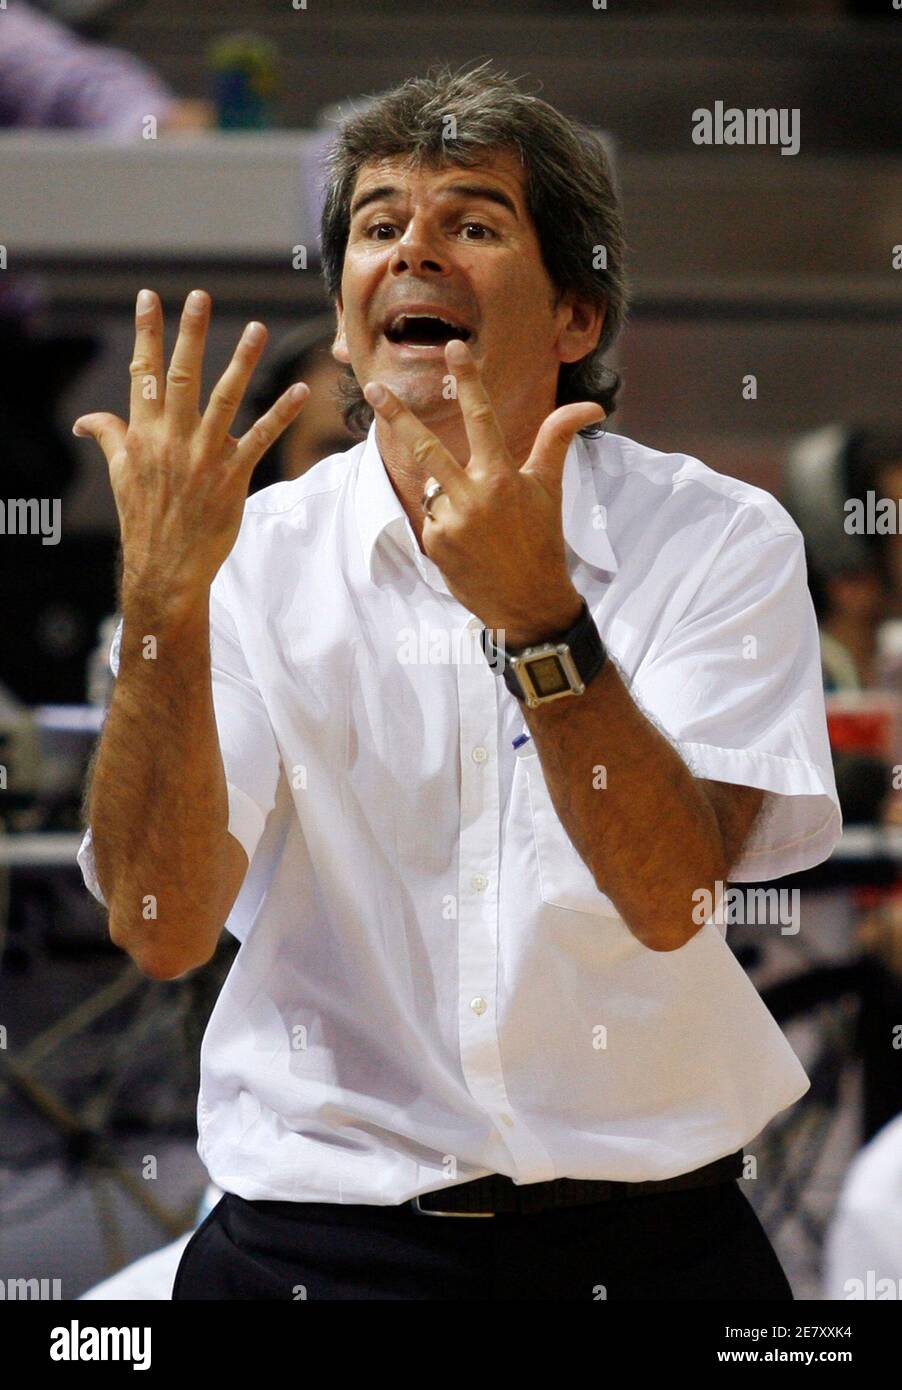 Claude Bergeaud, entrenador de Francia, hace gestos durante su segunda ronda de baloncesto contra Lituania en el Campeonato Europeo de Madrid el 10 de septiembre de 2007. REUTERS/Ivan Milutinovic (ESPAÑA) Foto de stock